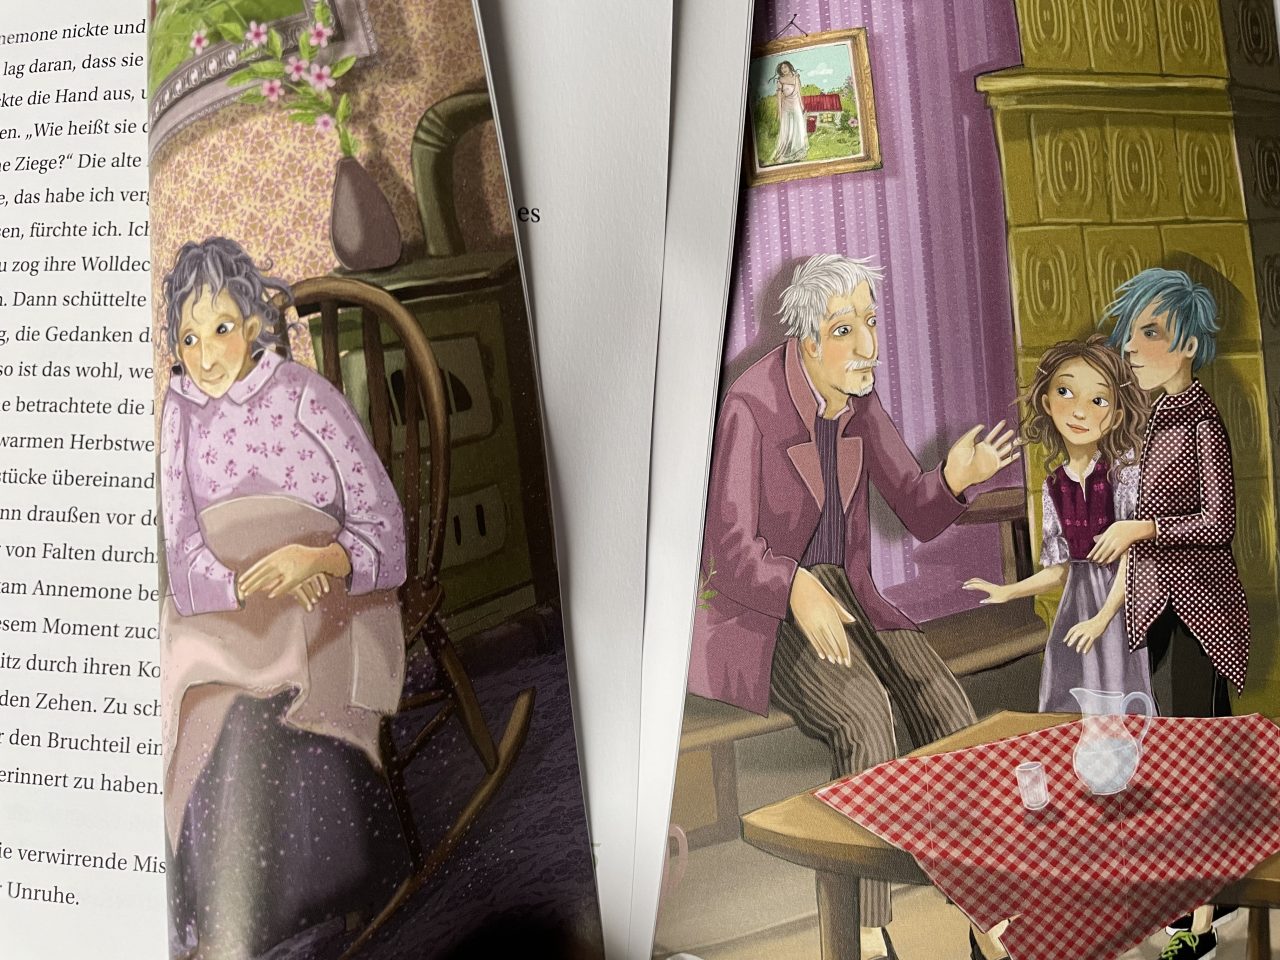 Einblick in das Kinderbuch "Annemone Apfelstroh" mit Text und Illustration der gealterten Eltern und zwei Kindern